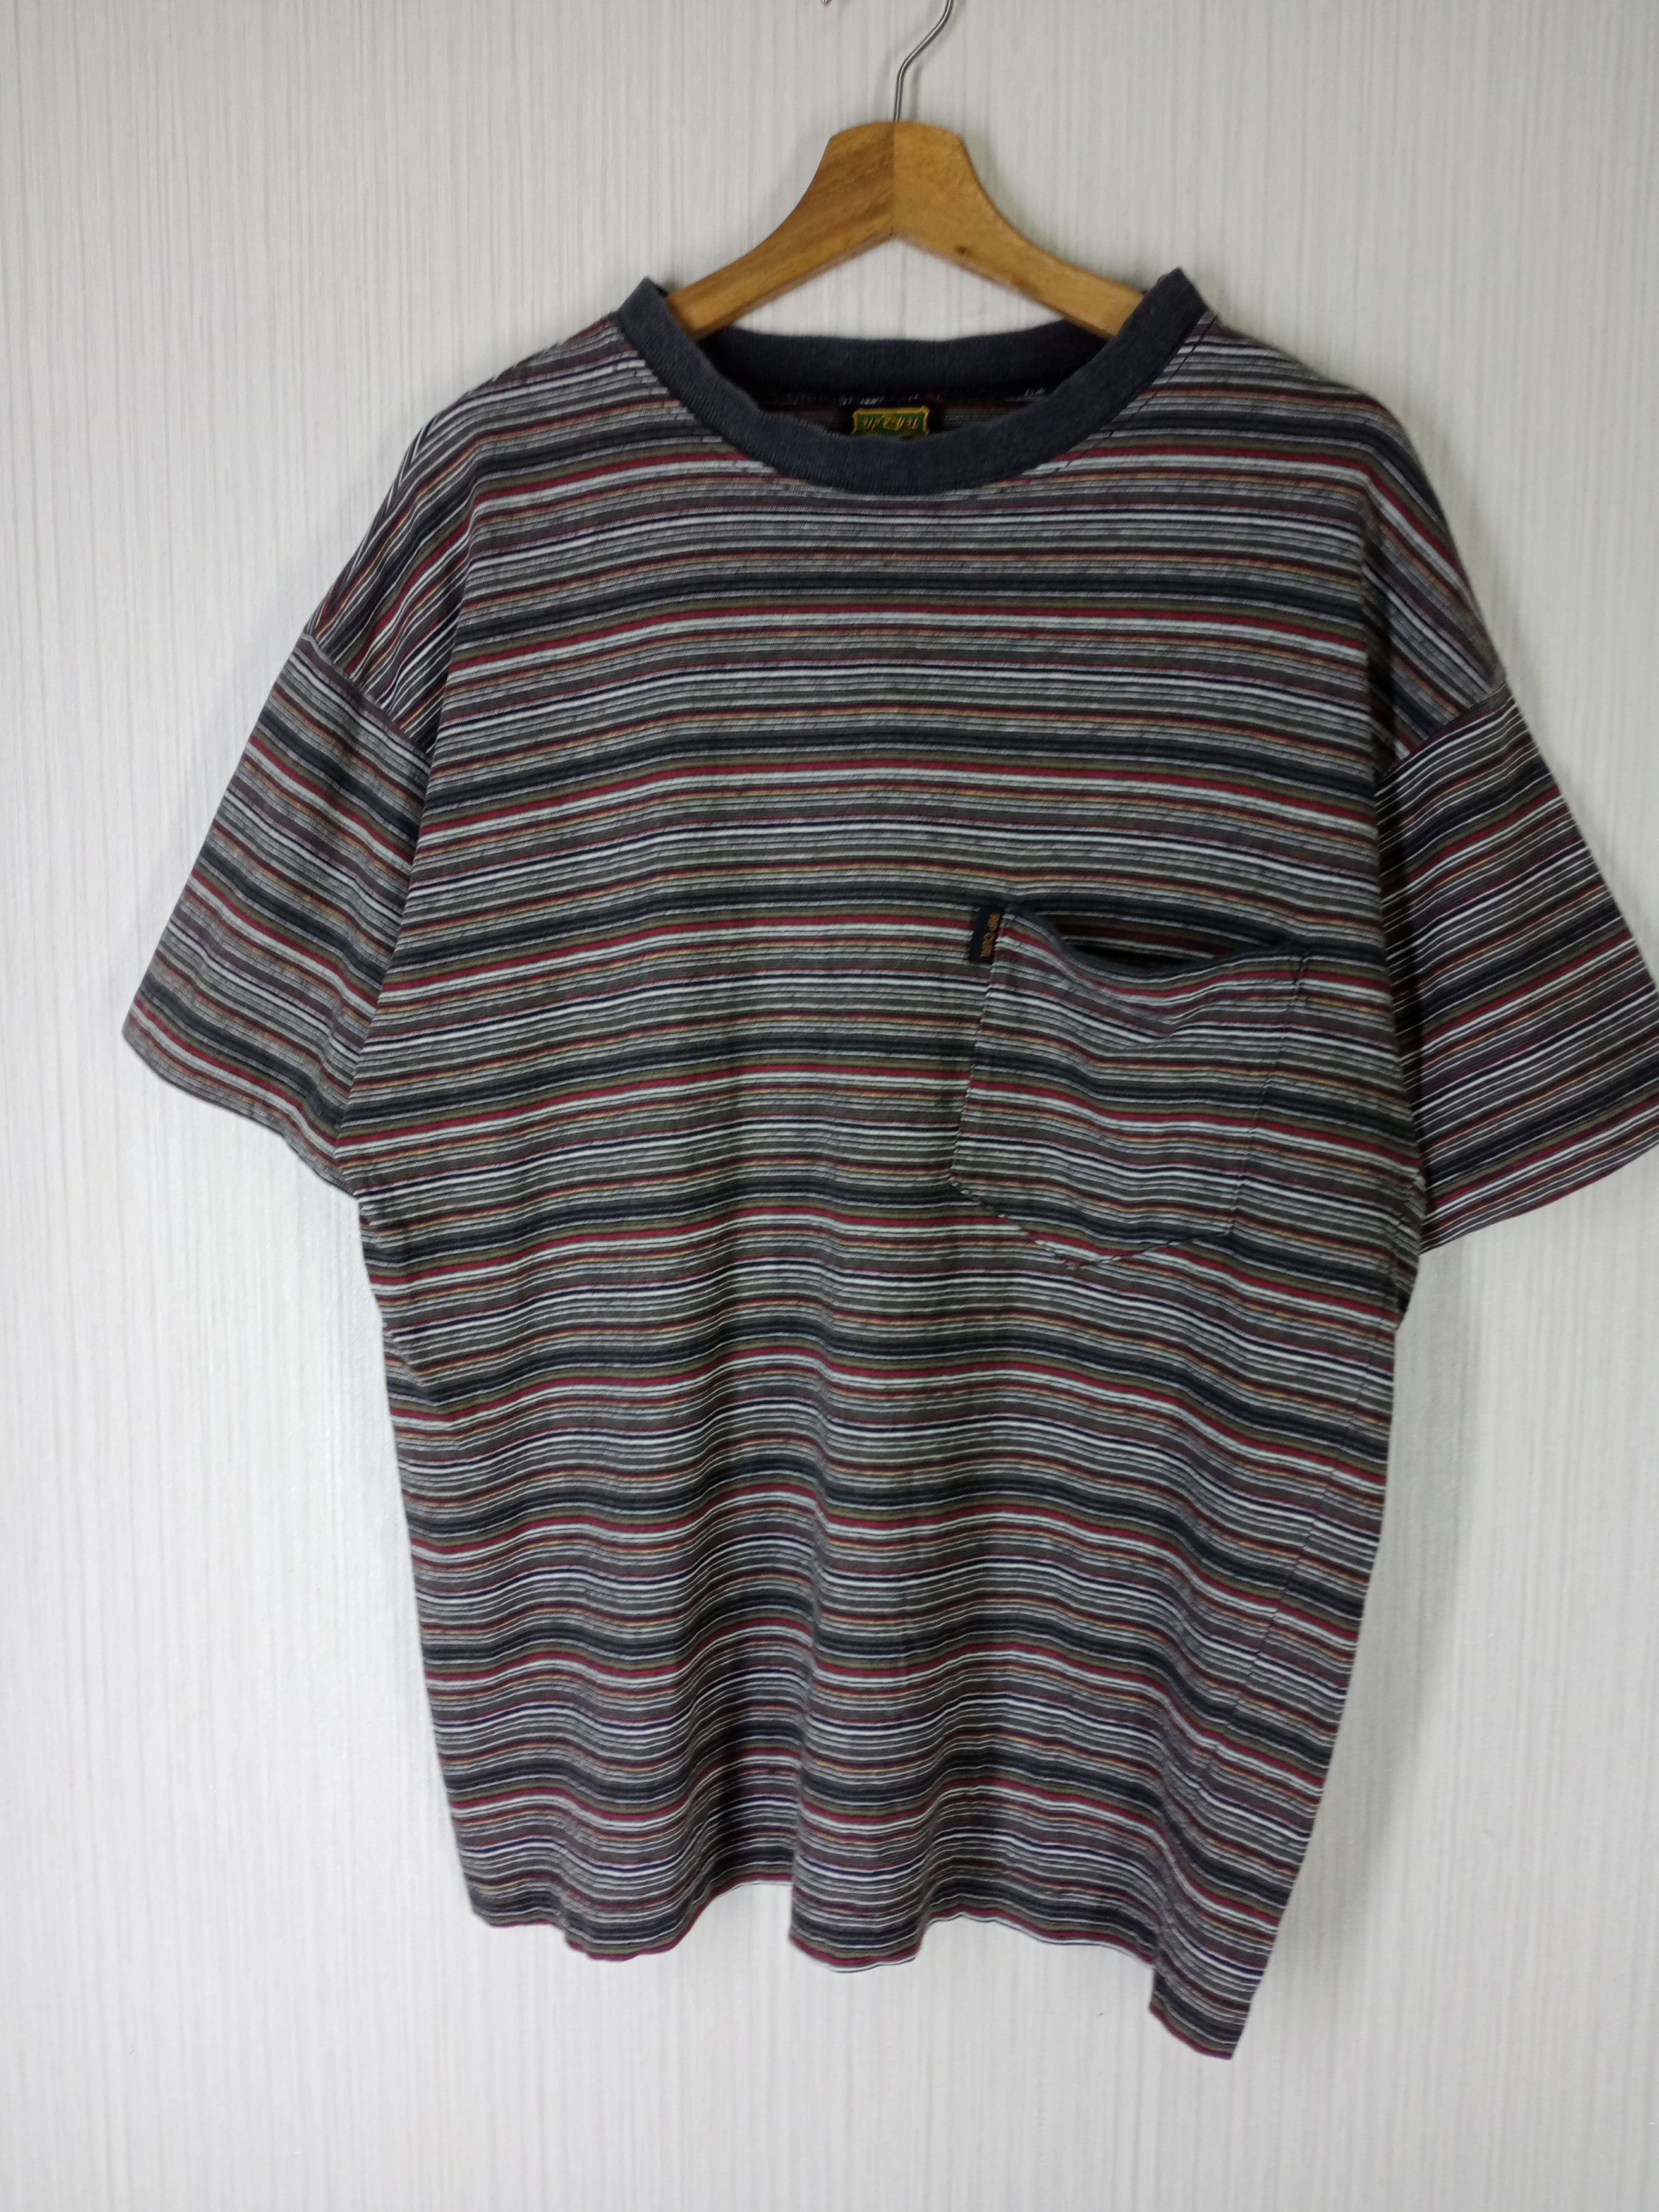 Vintage Rare Vintage 90s Ripcurl Striped Tshirt | Grailed